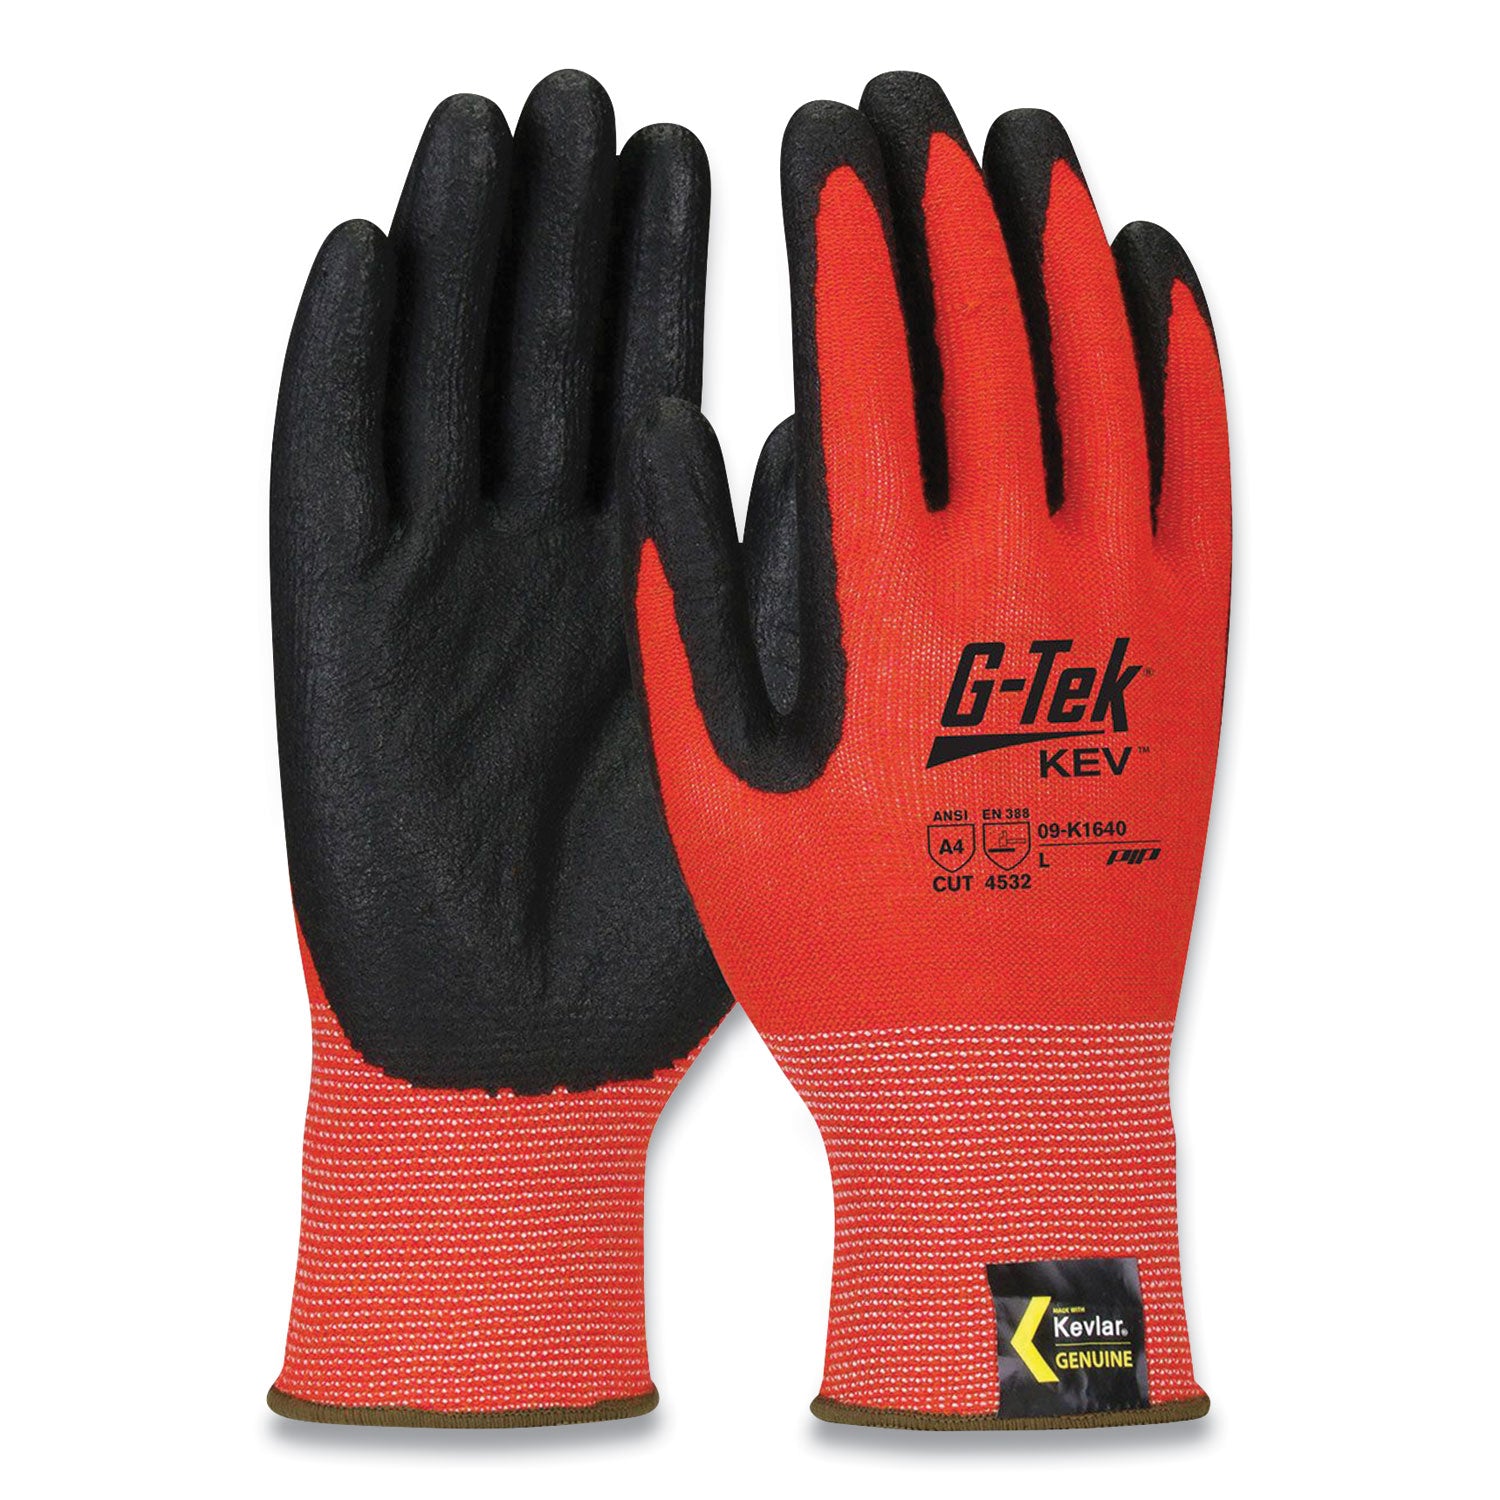 kev-hi-vis-seamless-knit-kevlar-gloves-large-red-black_pid09k1640l - 1